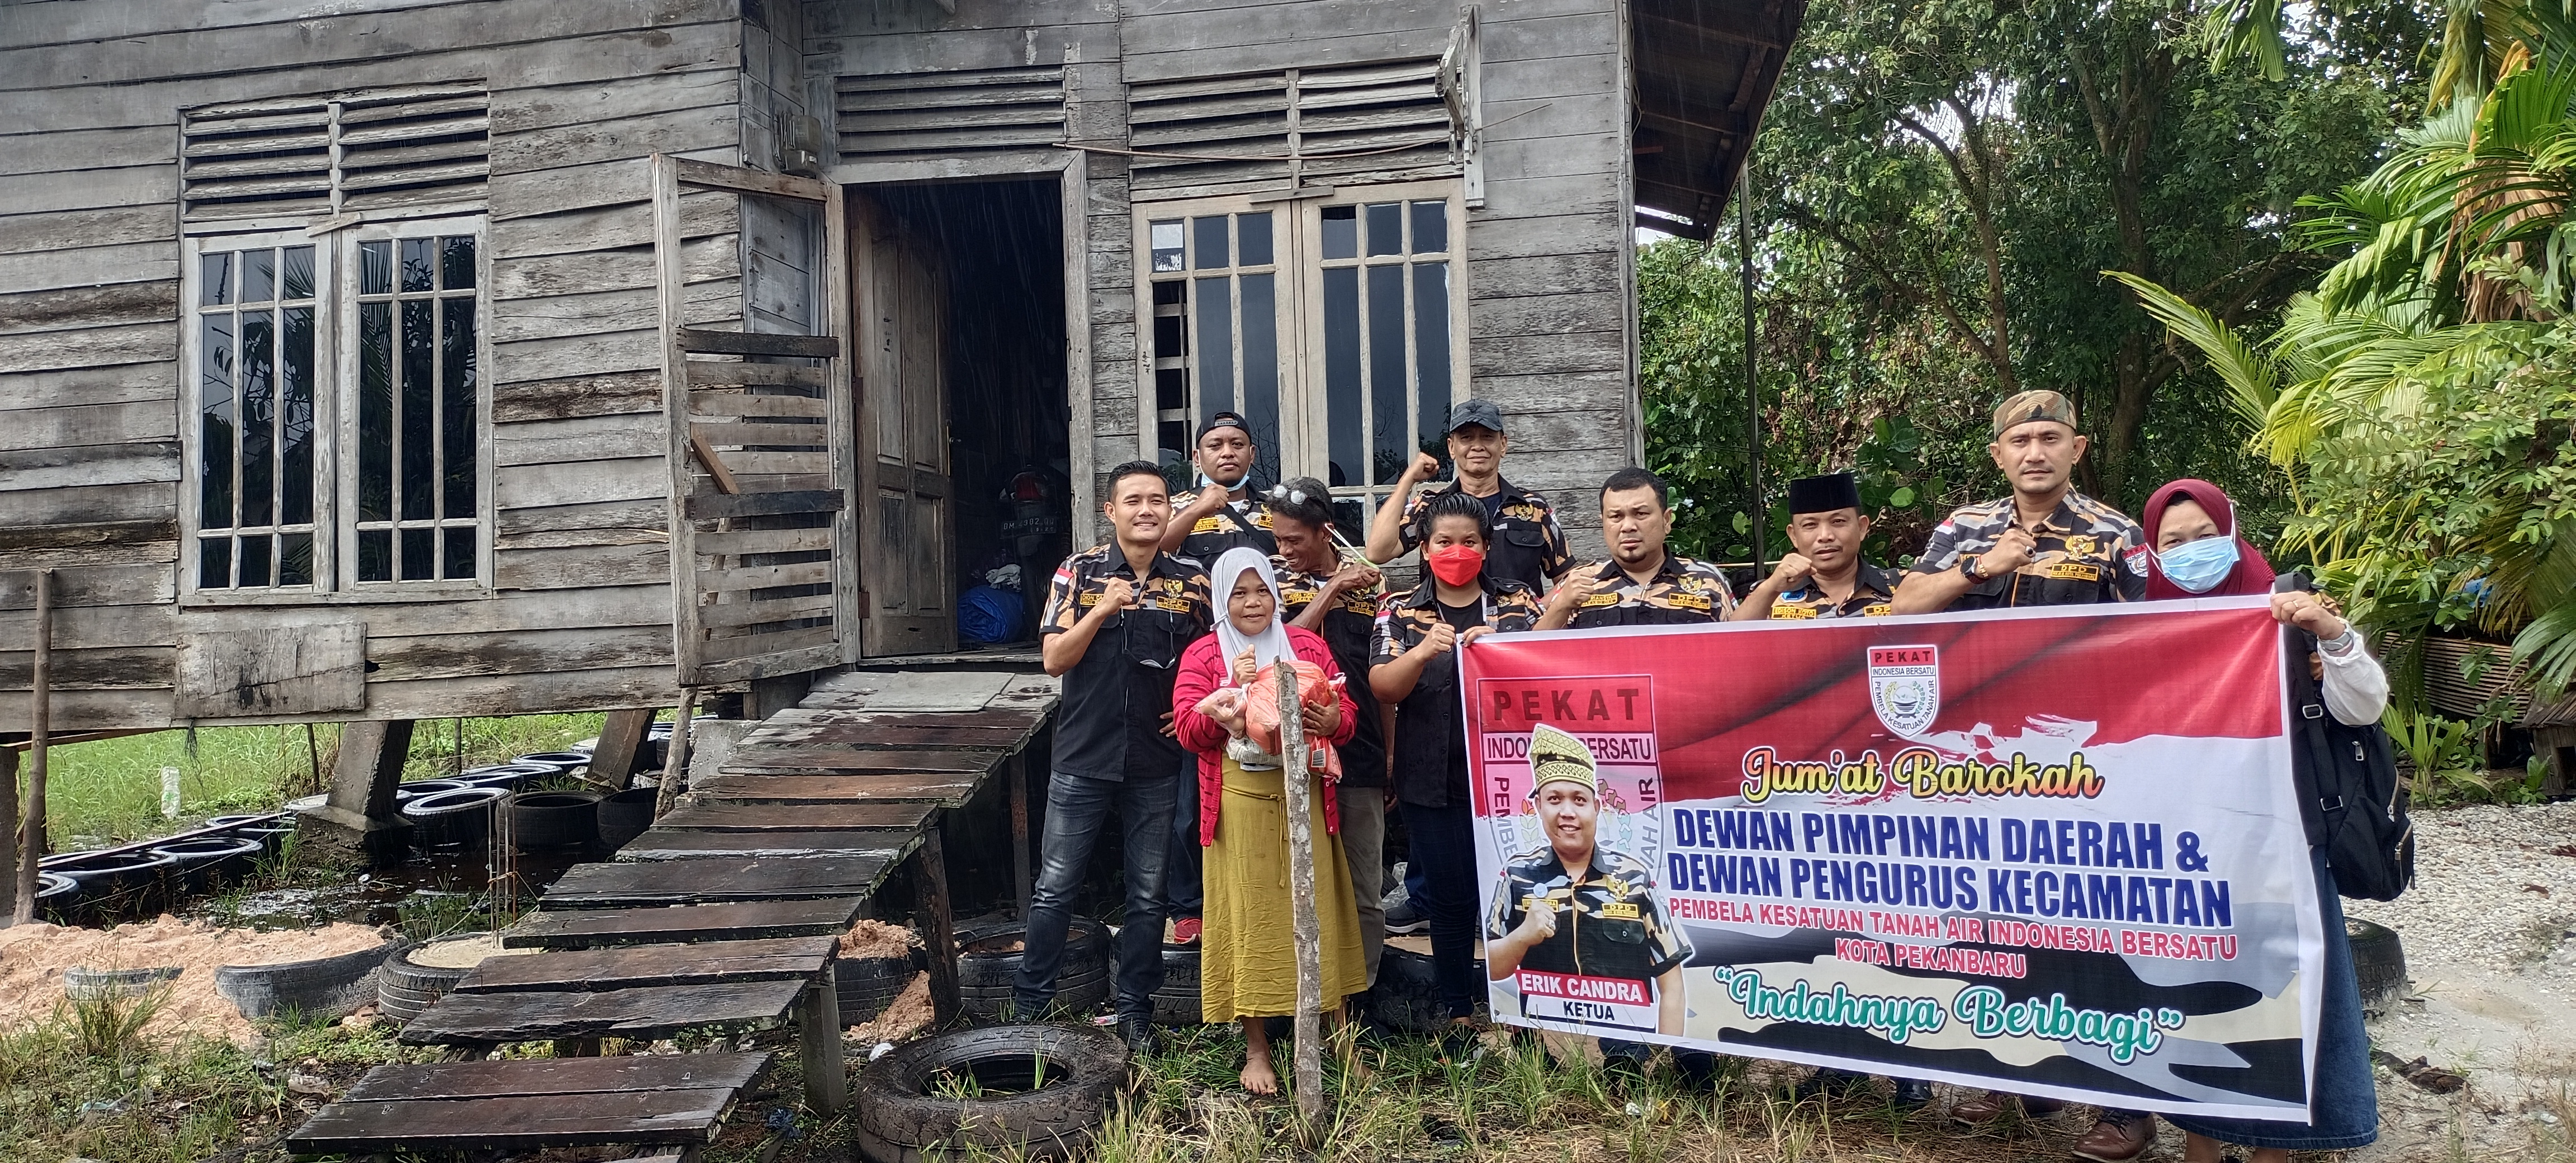 PEKAT IB Kota Pekanbaru  Peduli Kesejahteraan Masyarakat Kurang Mampu Melalui Program Jumat Barokah.